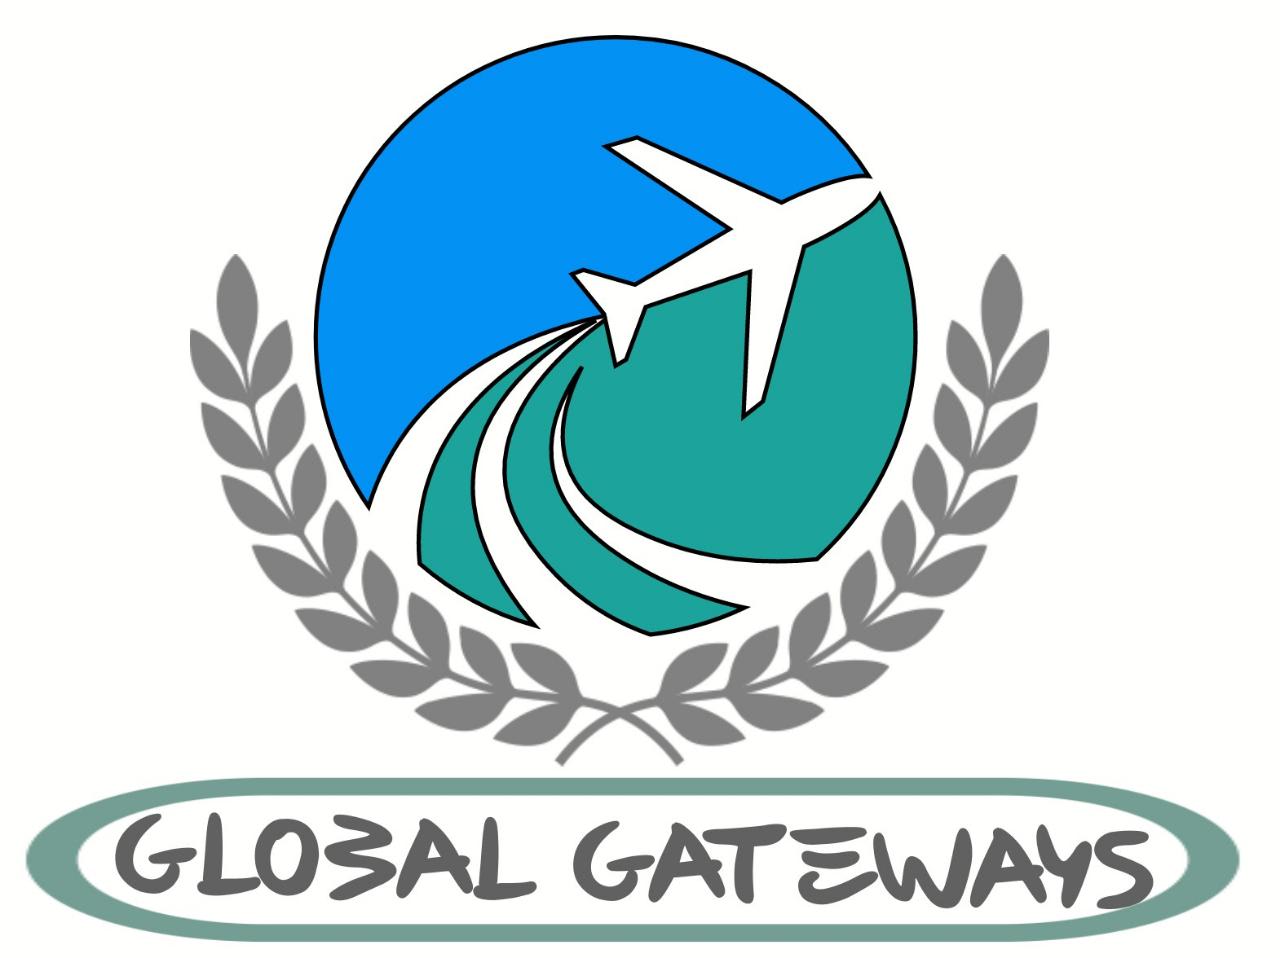 Global Gateways